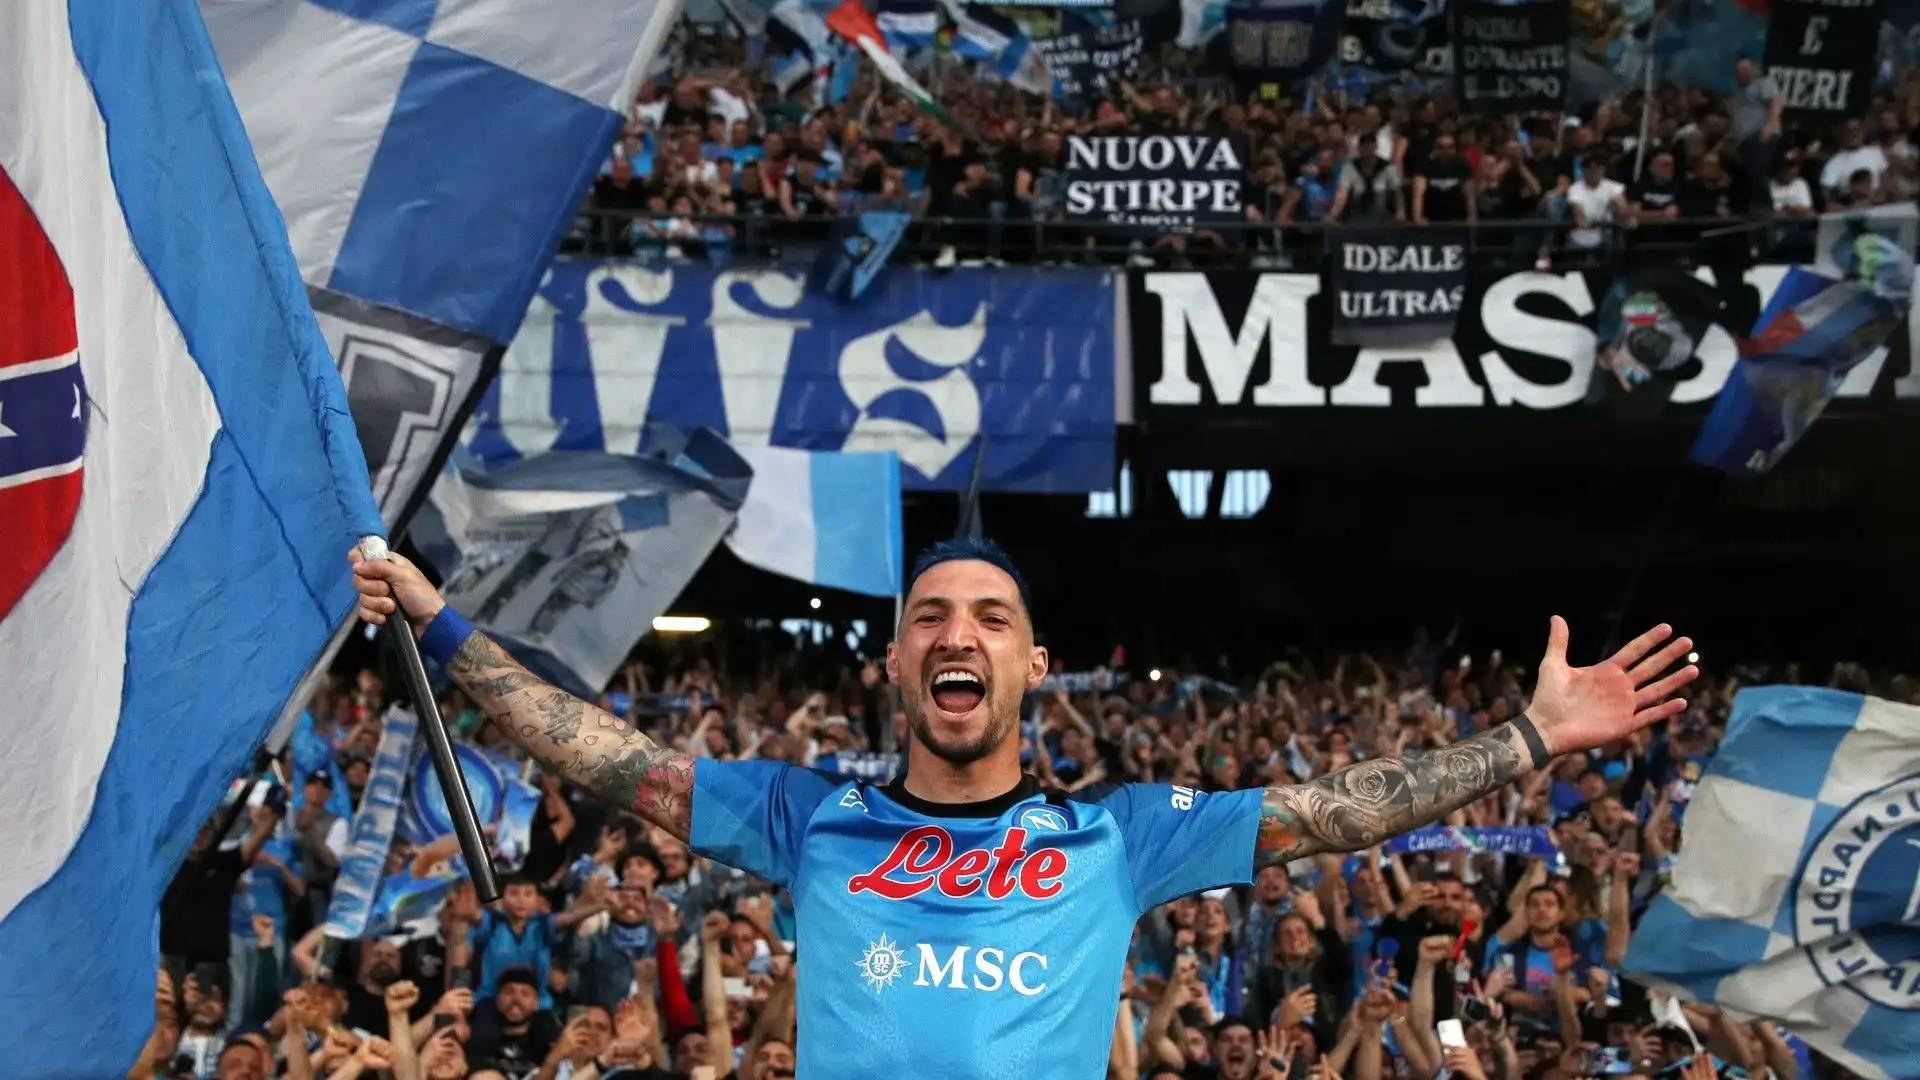 Matteo Politano, ex Inter, ha festeggiato con la bandiera del Napoli in mano